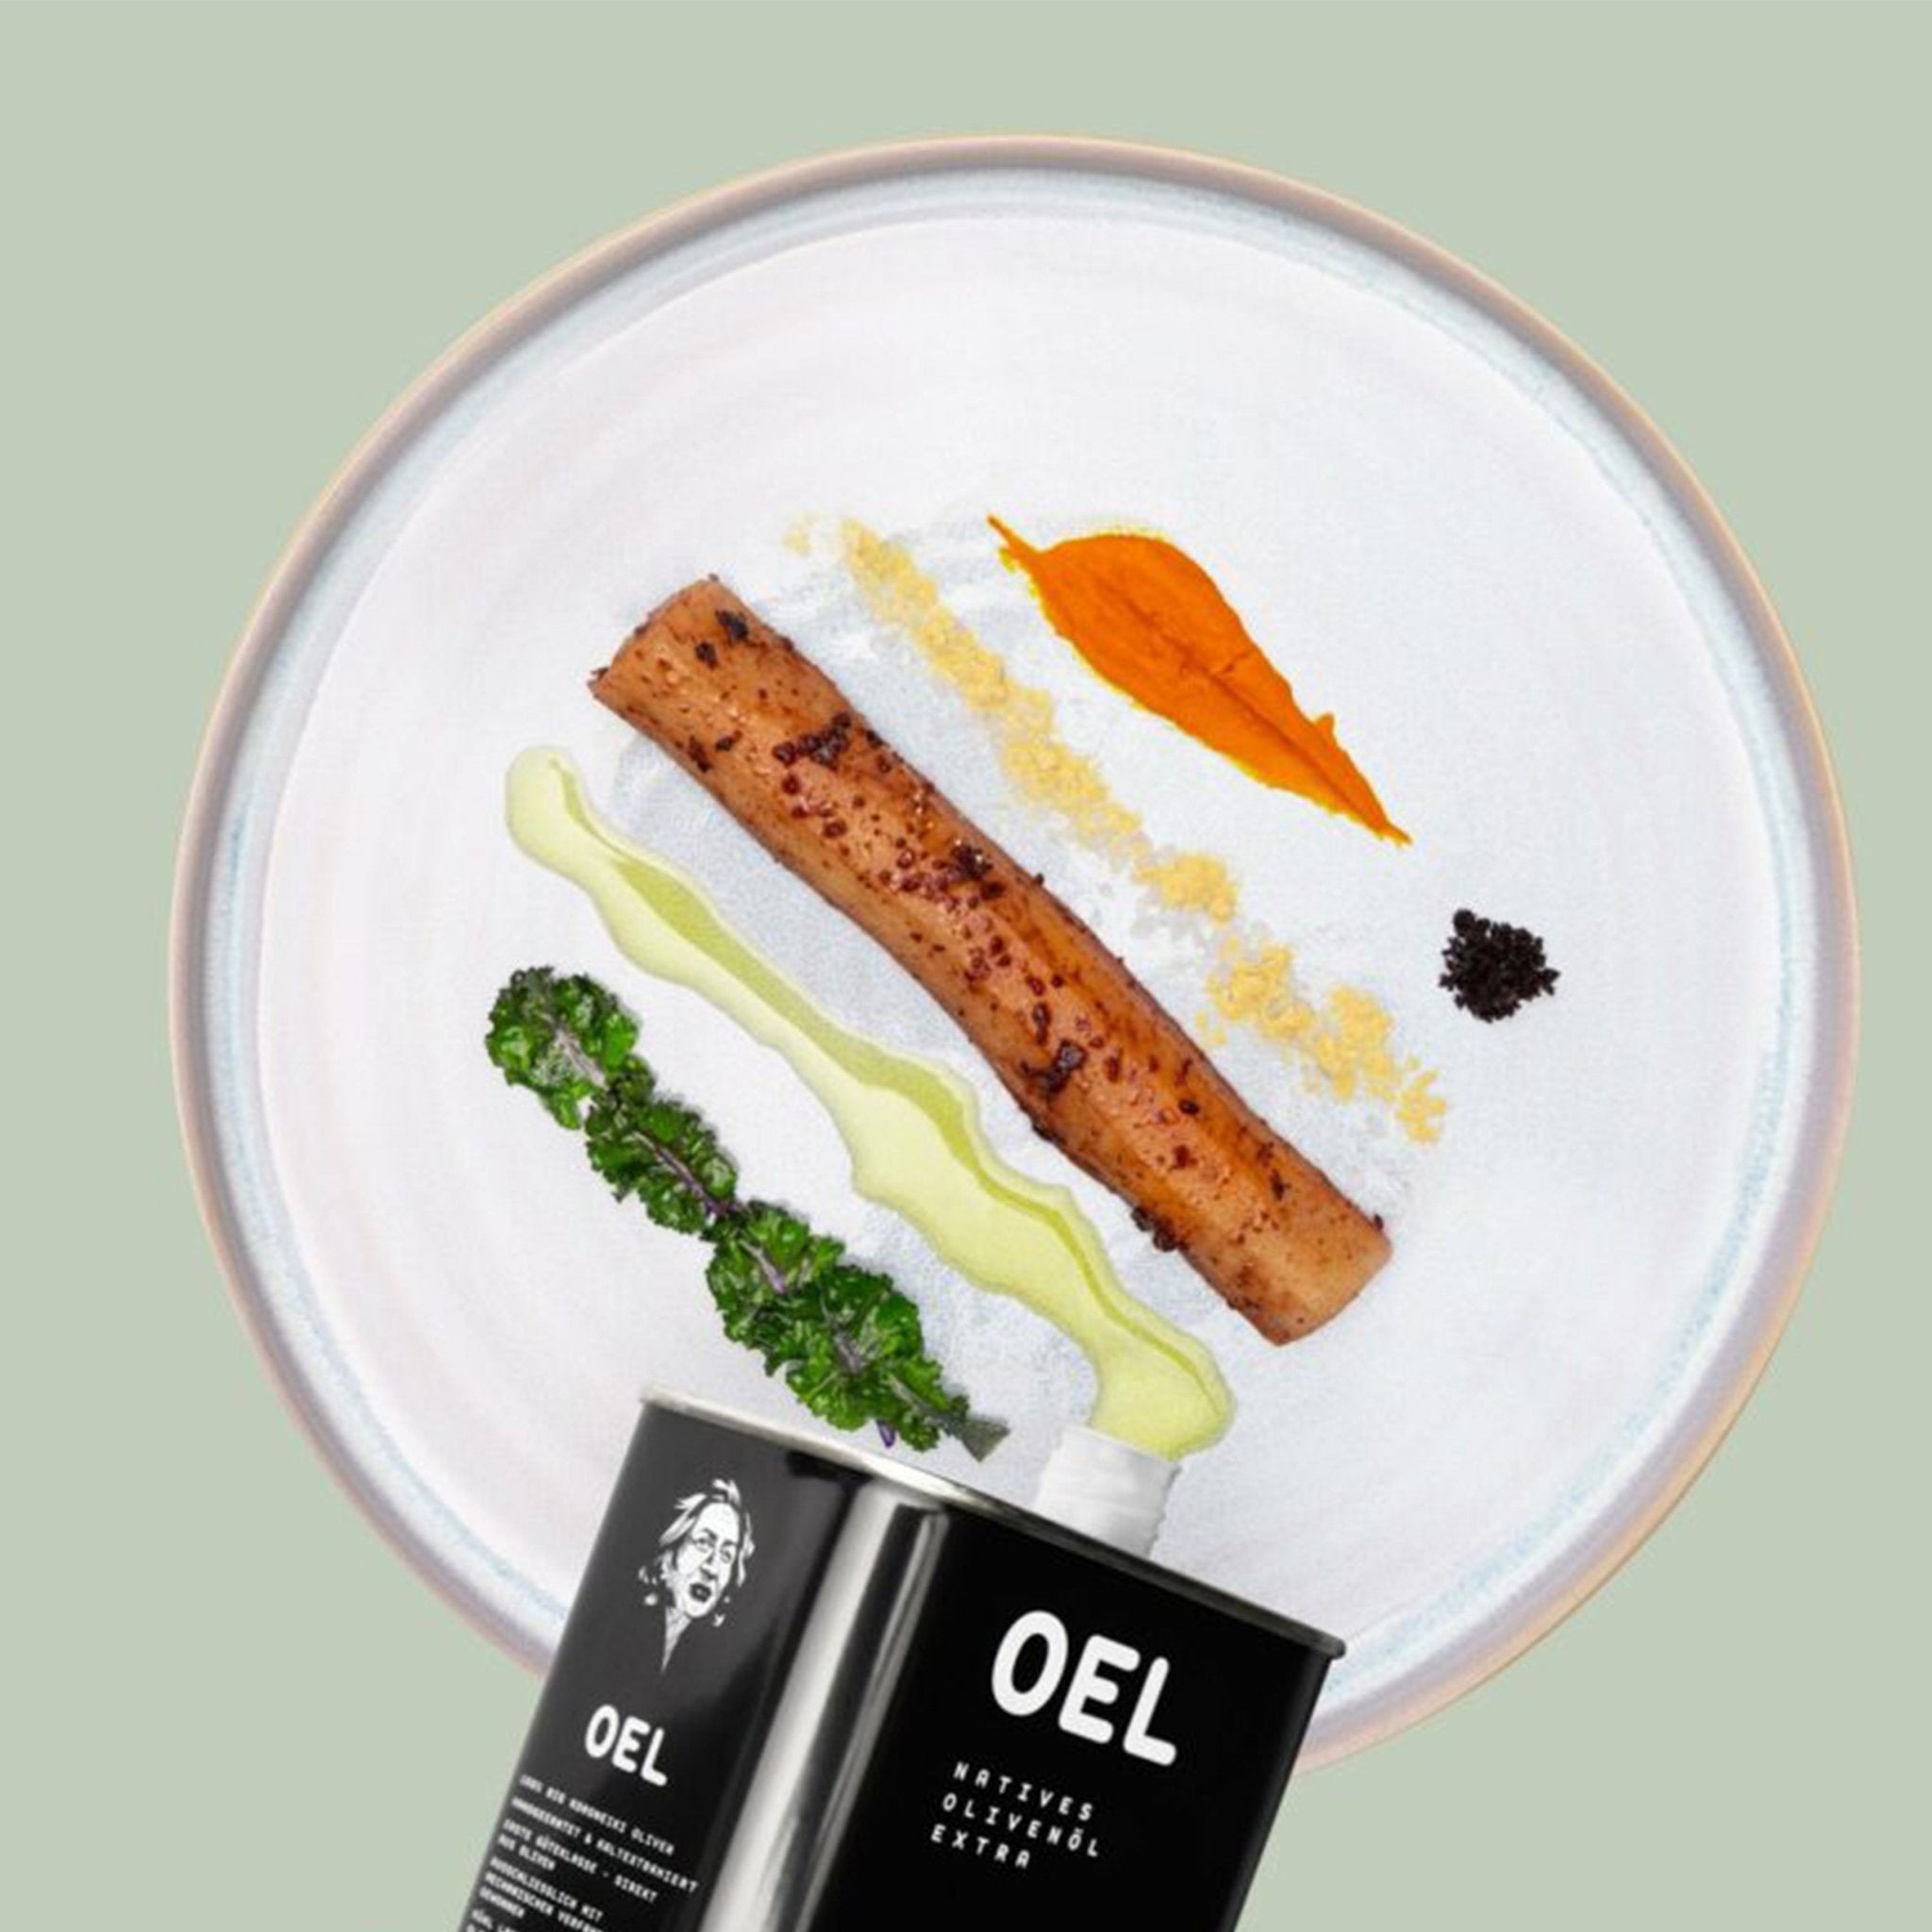 OEL 250 ml - Bio Natives Olivenöl Extra aus Griechenland - OEL - Griechische Produkte und Olivenöl - Bestandsartikel red. MWST (7%) - OEL Olivenprodukte